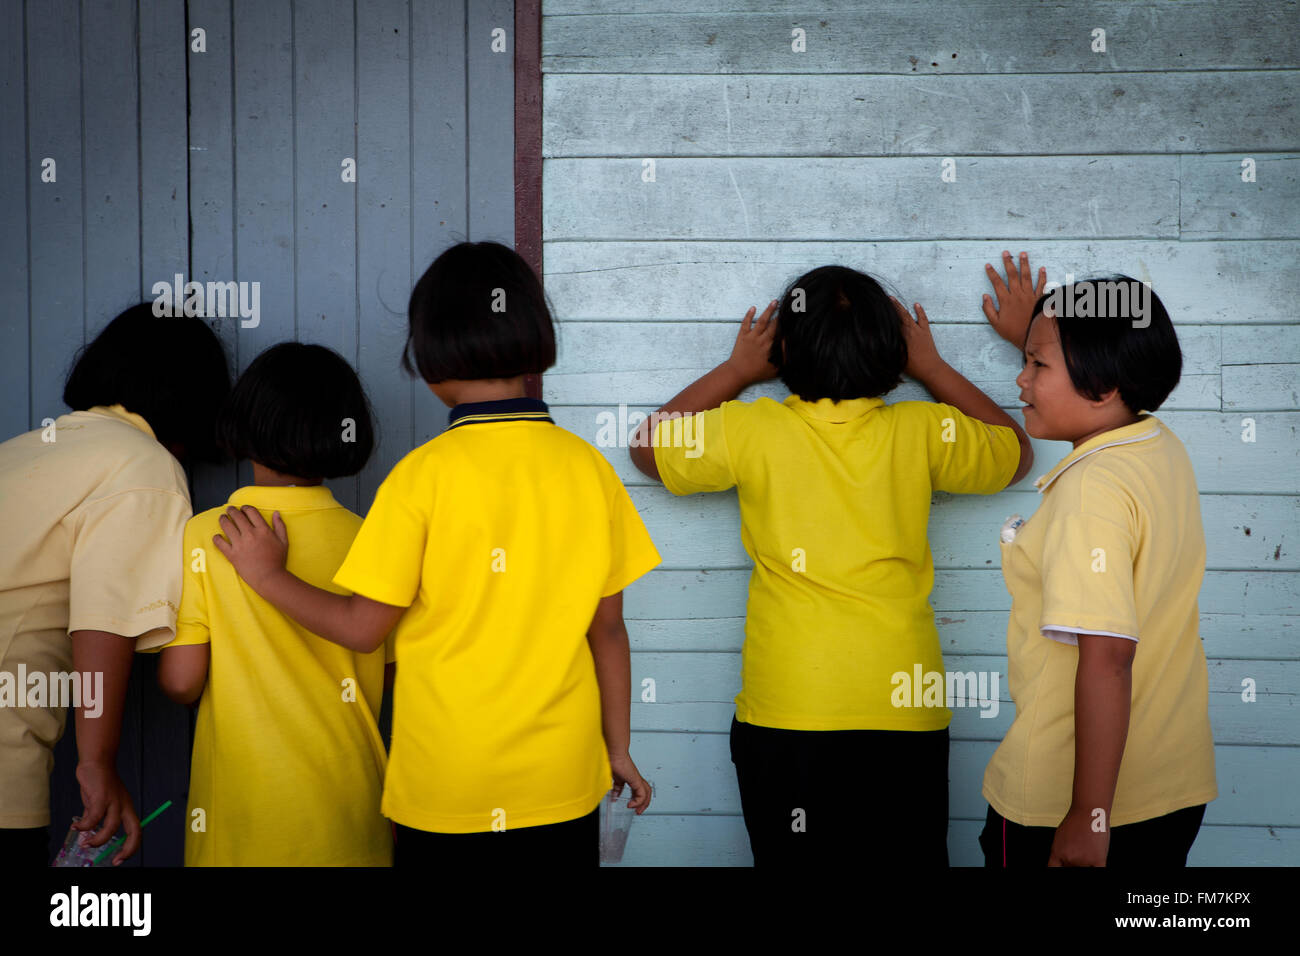 Bucht von Phang Nga, Thailand. Junge Mädchen gucken in einem Klassenzimmer an der örtlichen Schule auf der kleinen Insel Koh Panyi. Stockfoto